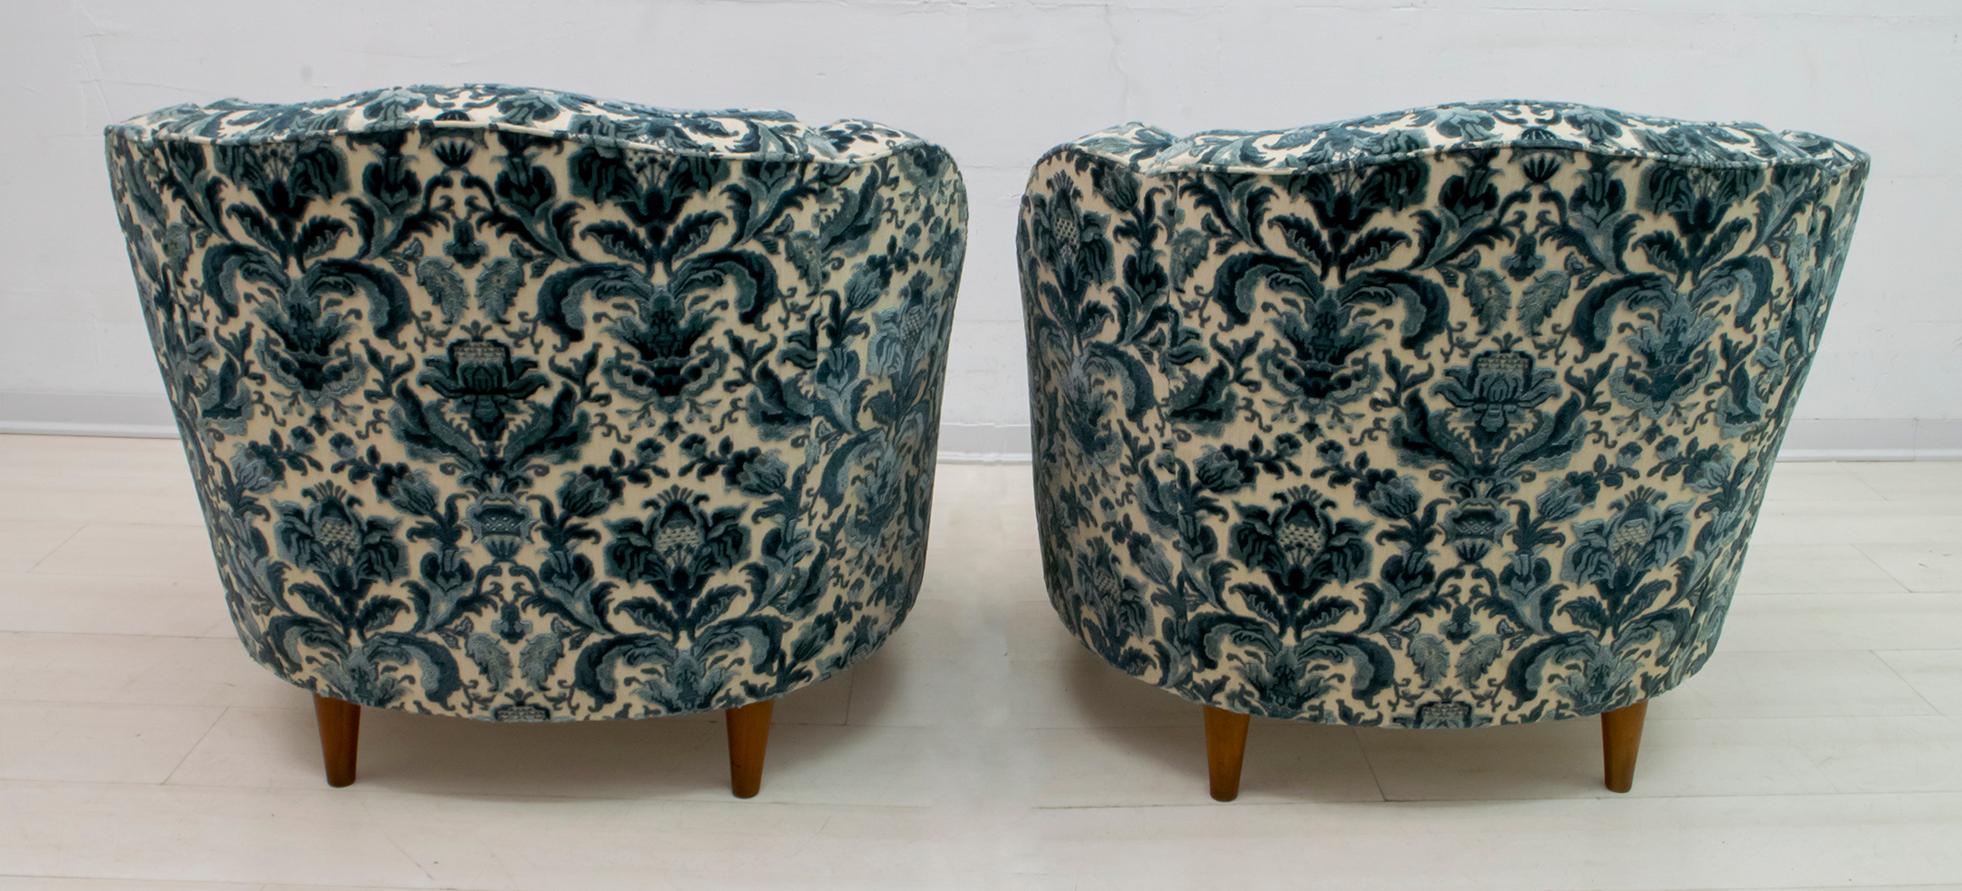 Pair of After Gio Ponti Mid-Century Modern Italian Textured Velvet Armchairs 1